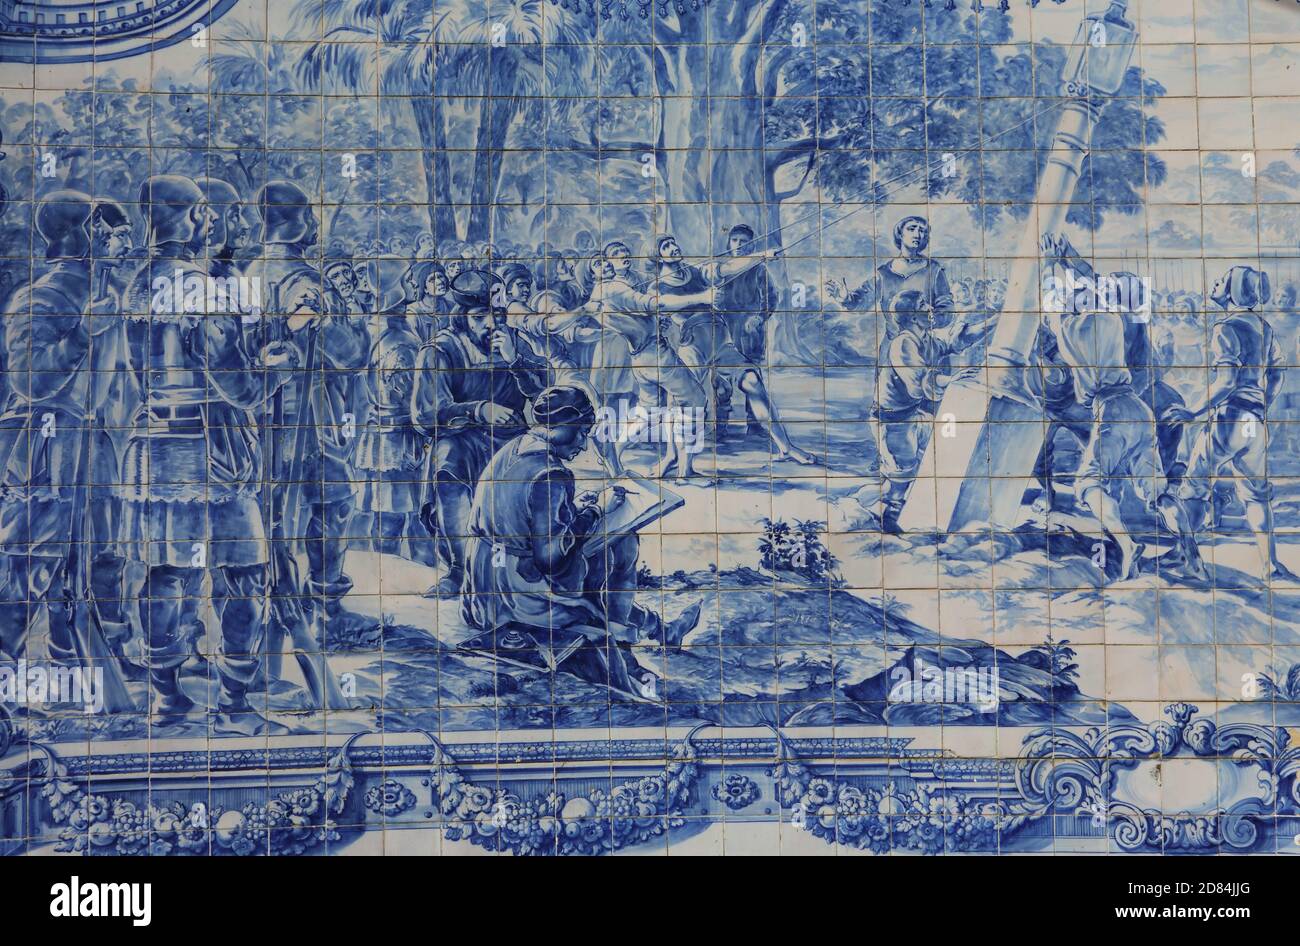 Portugal, Lissabon, Oeiras. Historische blaue und weiße Azulejo Keramikfliesen, die die portugiesische Landung auf einer Entdeckungsreise darstellen. Stockfoto